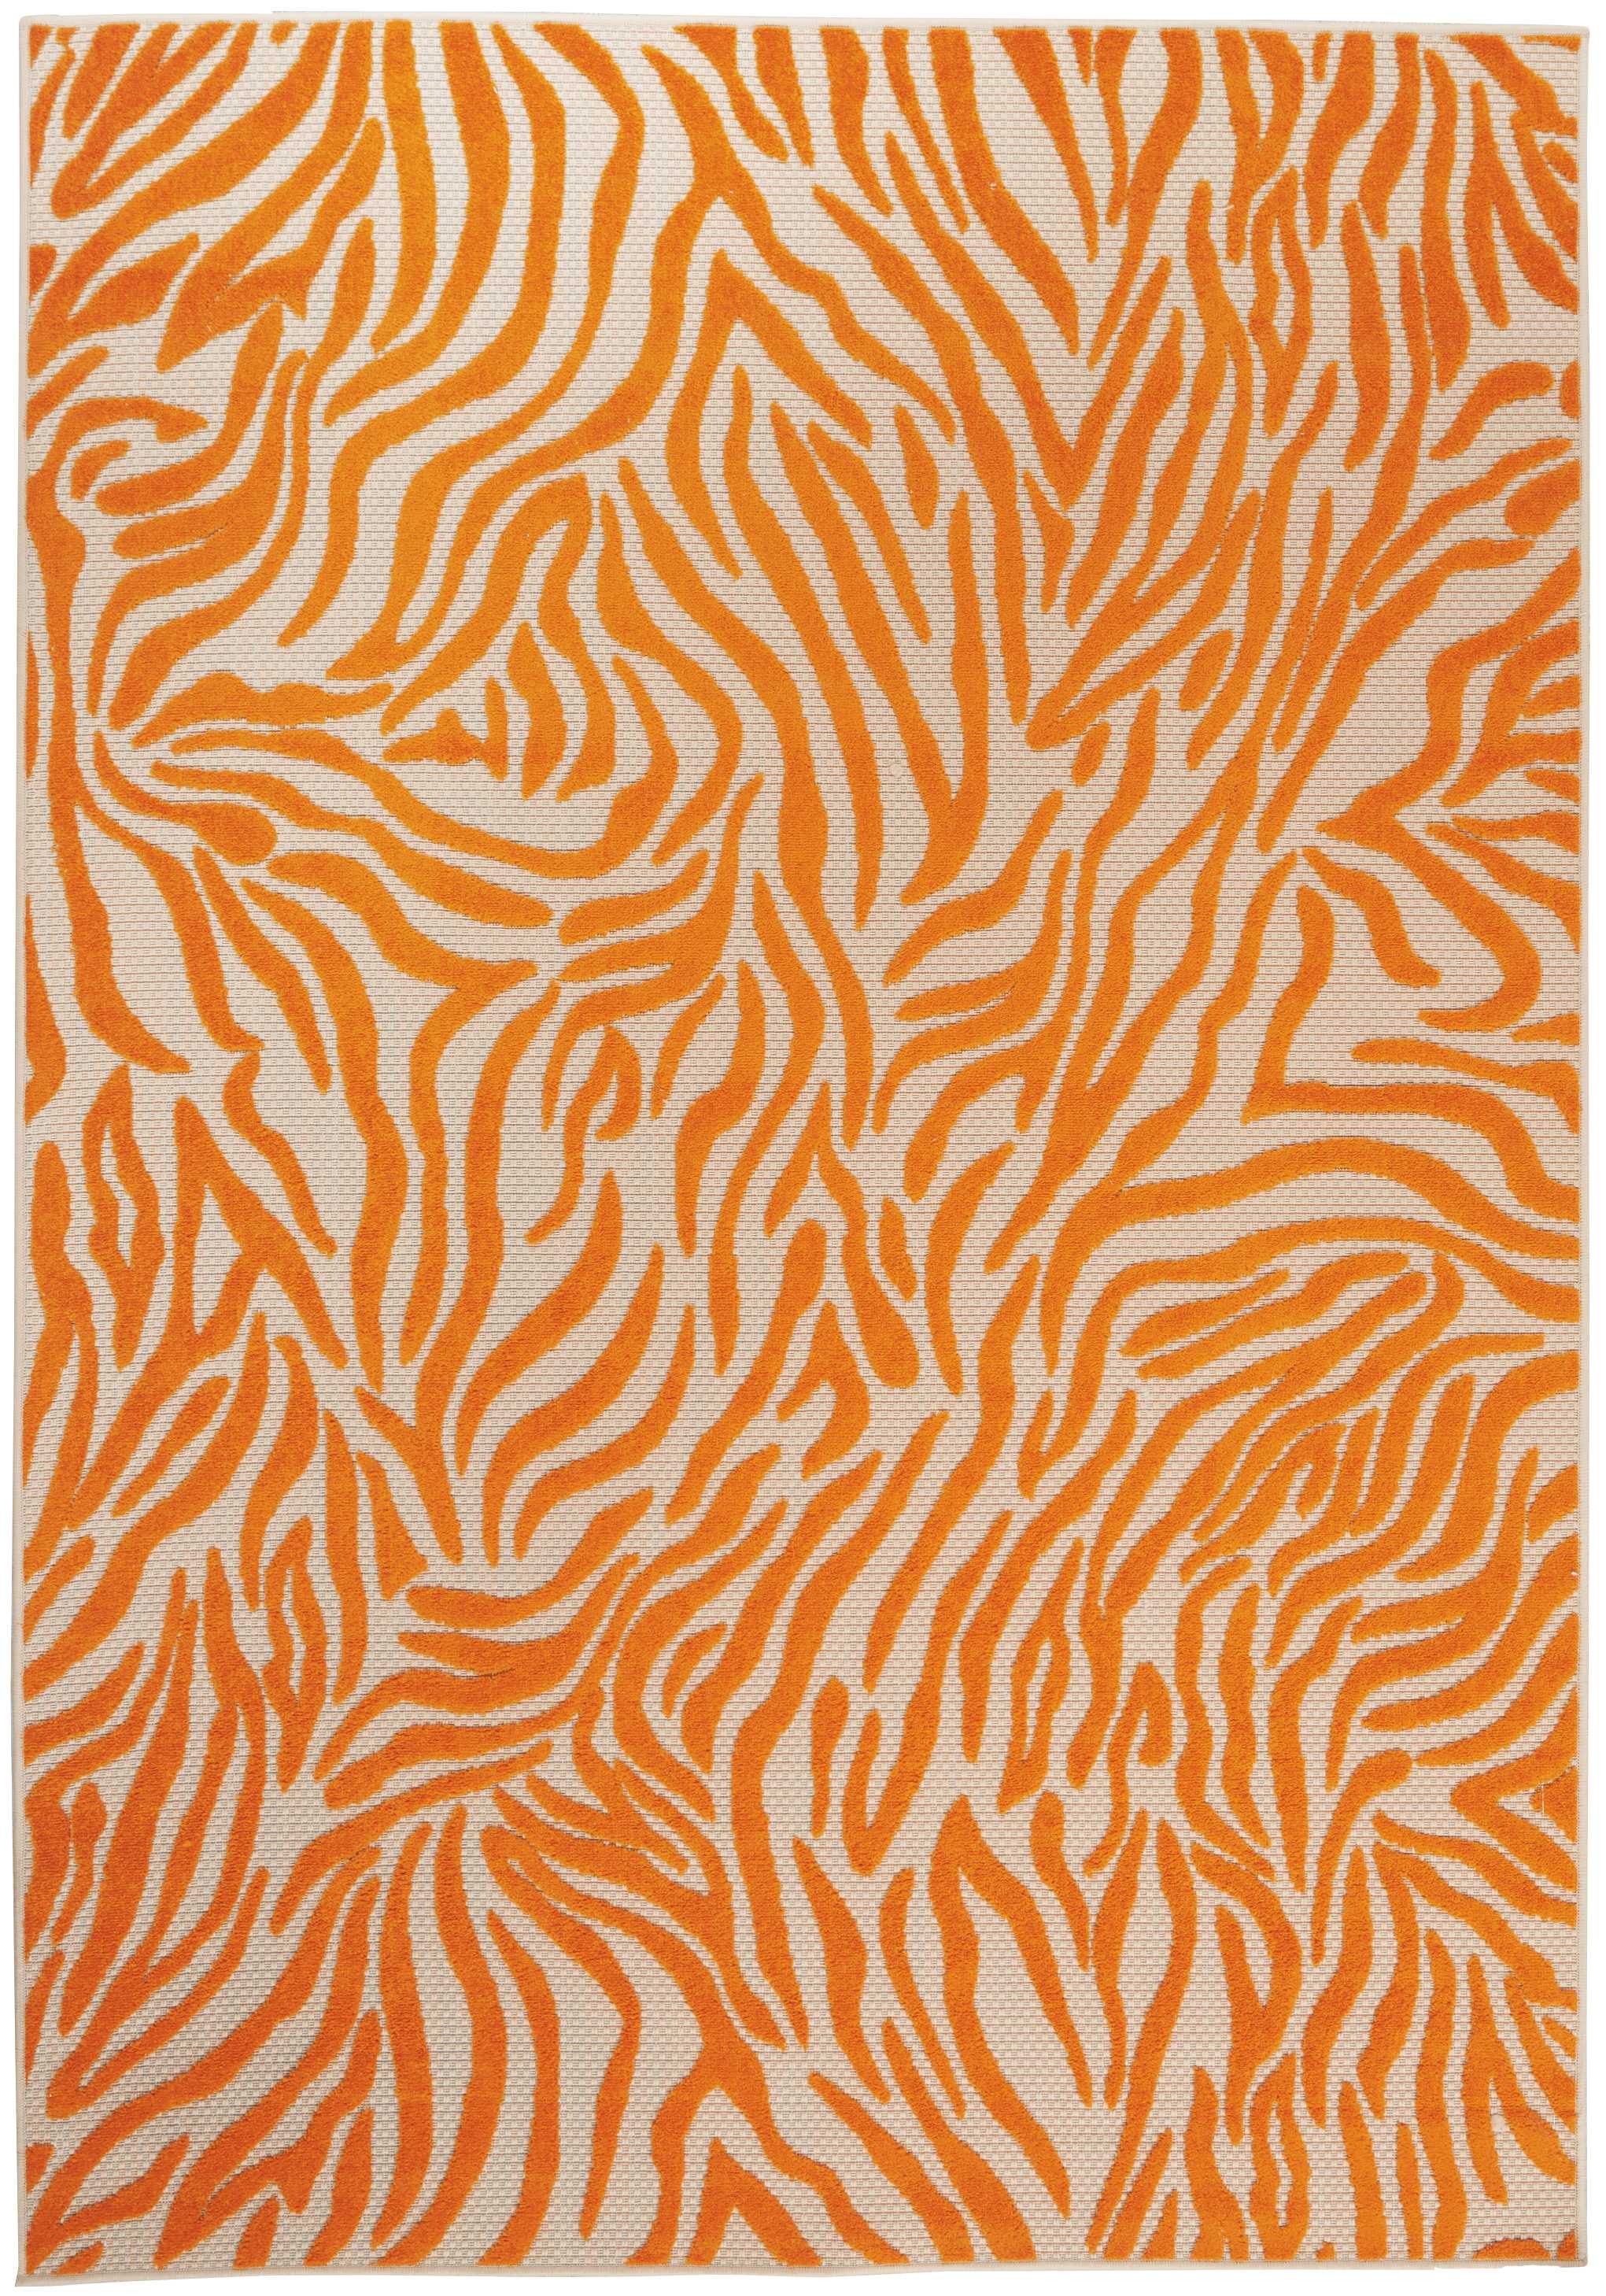 5’ X 8’ Orange Zebra Pattern Indoor Outdoor Area Rug-384591-1